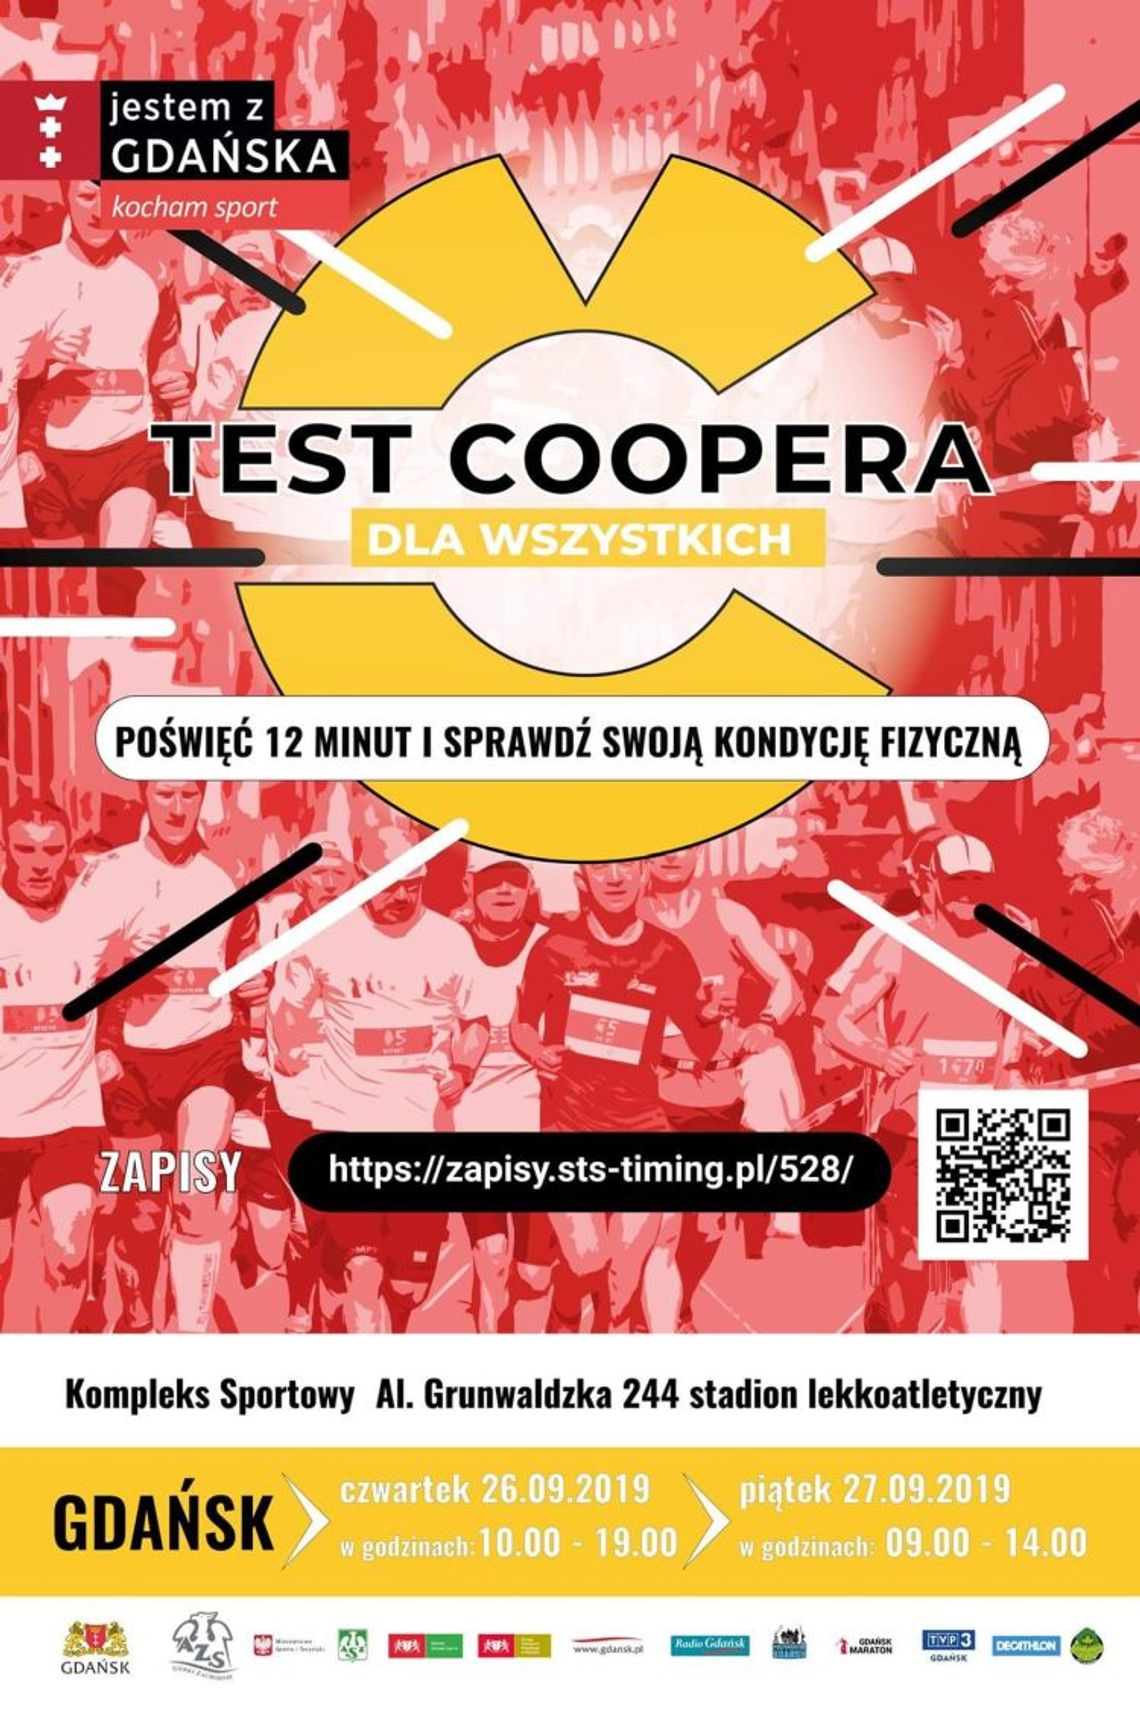 Gdański Test Coopera - sprawdź swoją kondycję fizyczną w 12 minut!